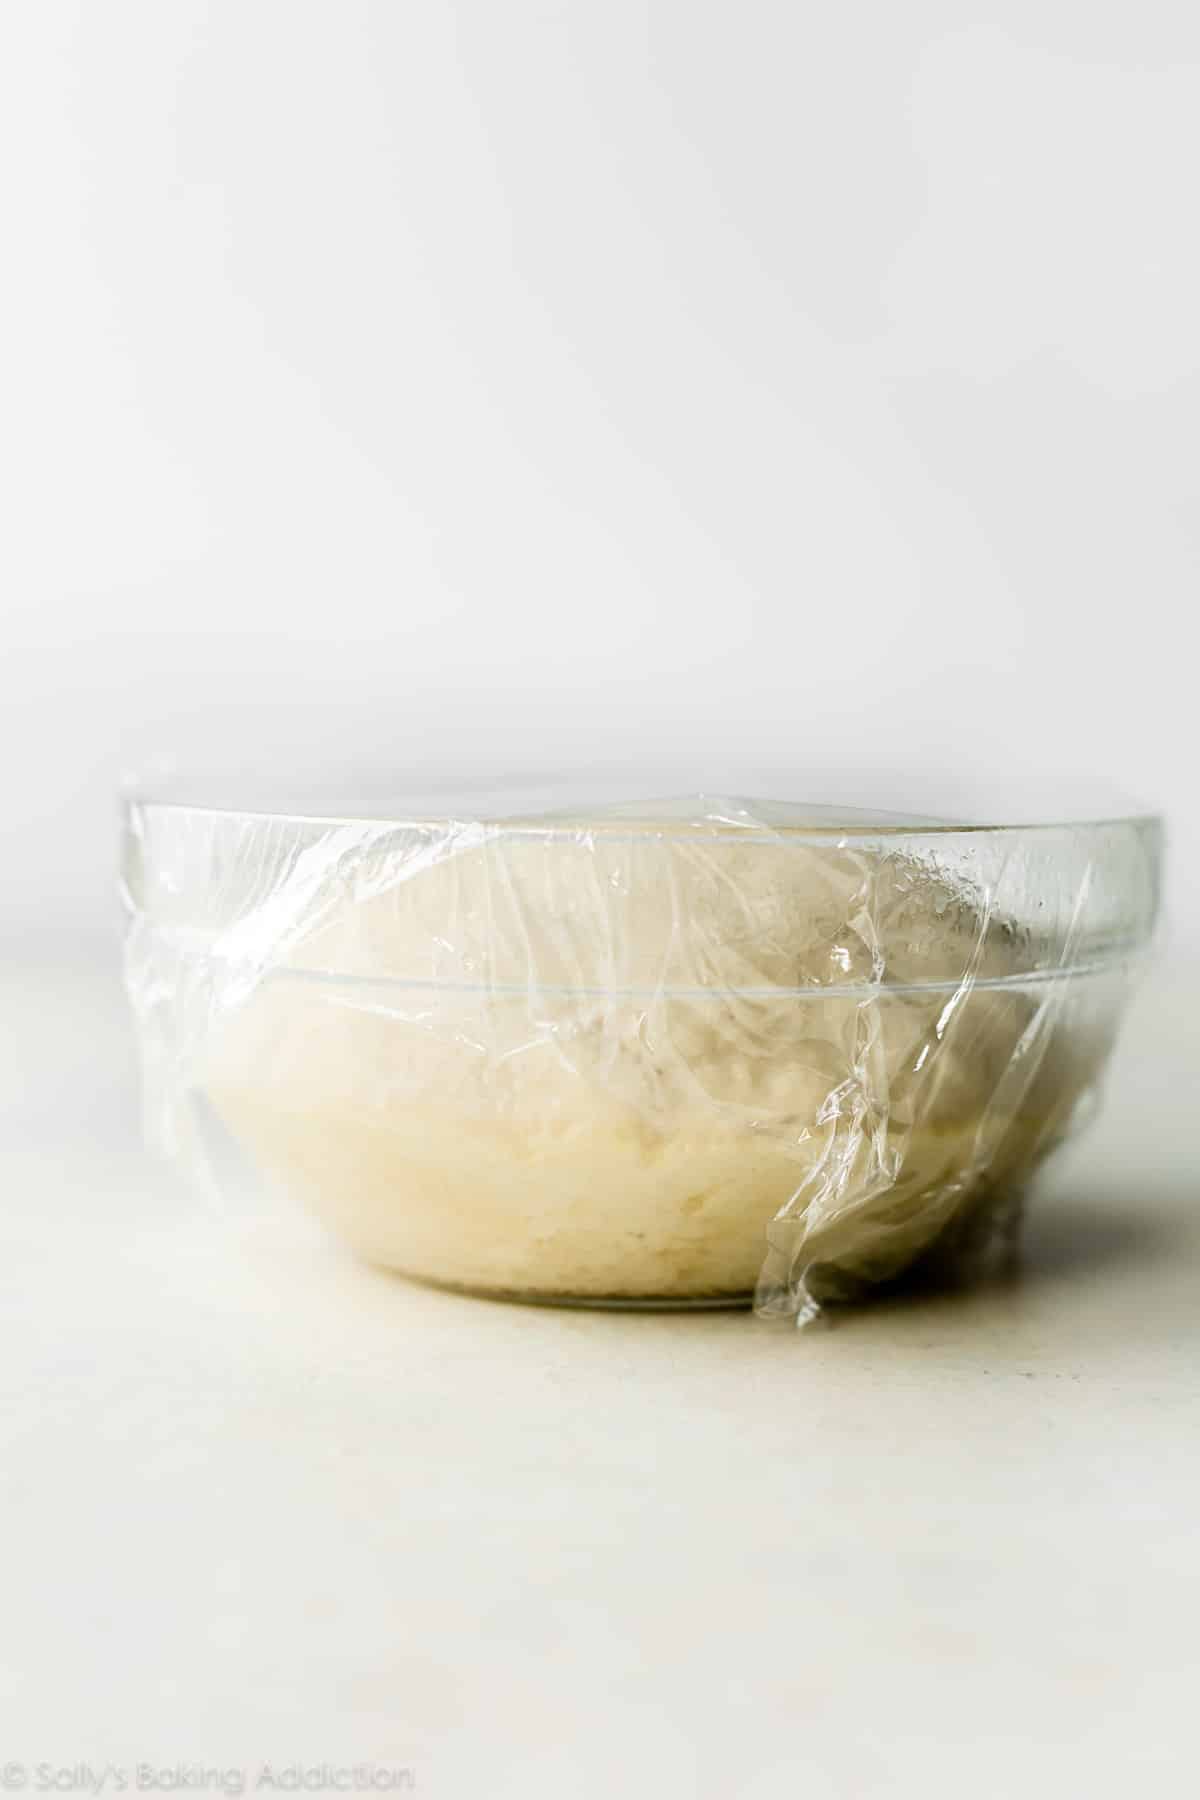 homemade flatbread dough